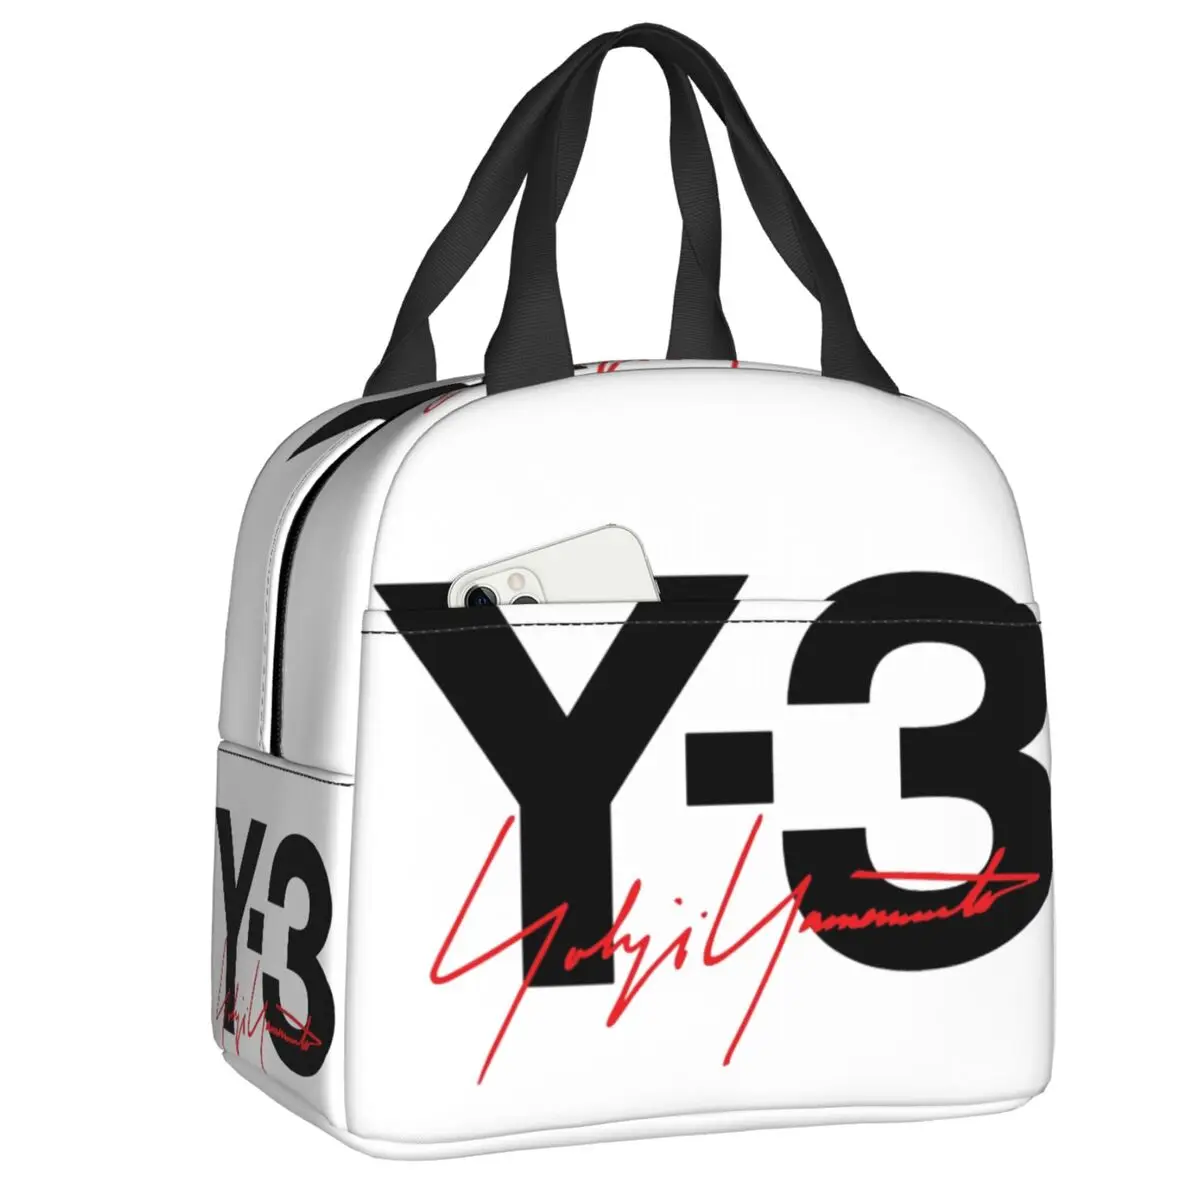 

TartanCustom Yohji Yamamoto Skullies сумка для ланча для мужчин и женщин, Термоизолированный Ланч-бокс для детей, школьный Ланч-бокс